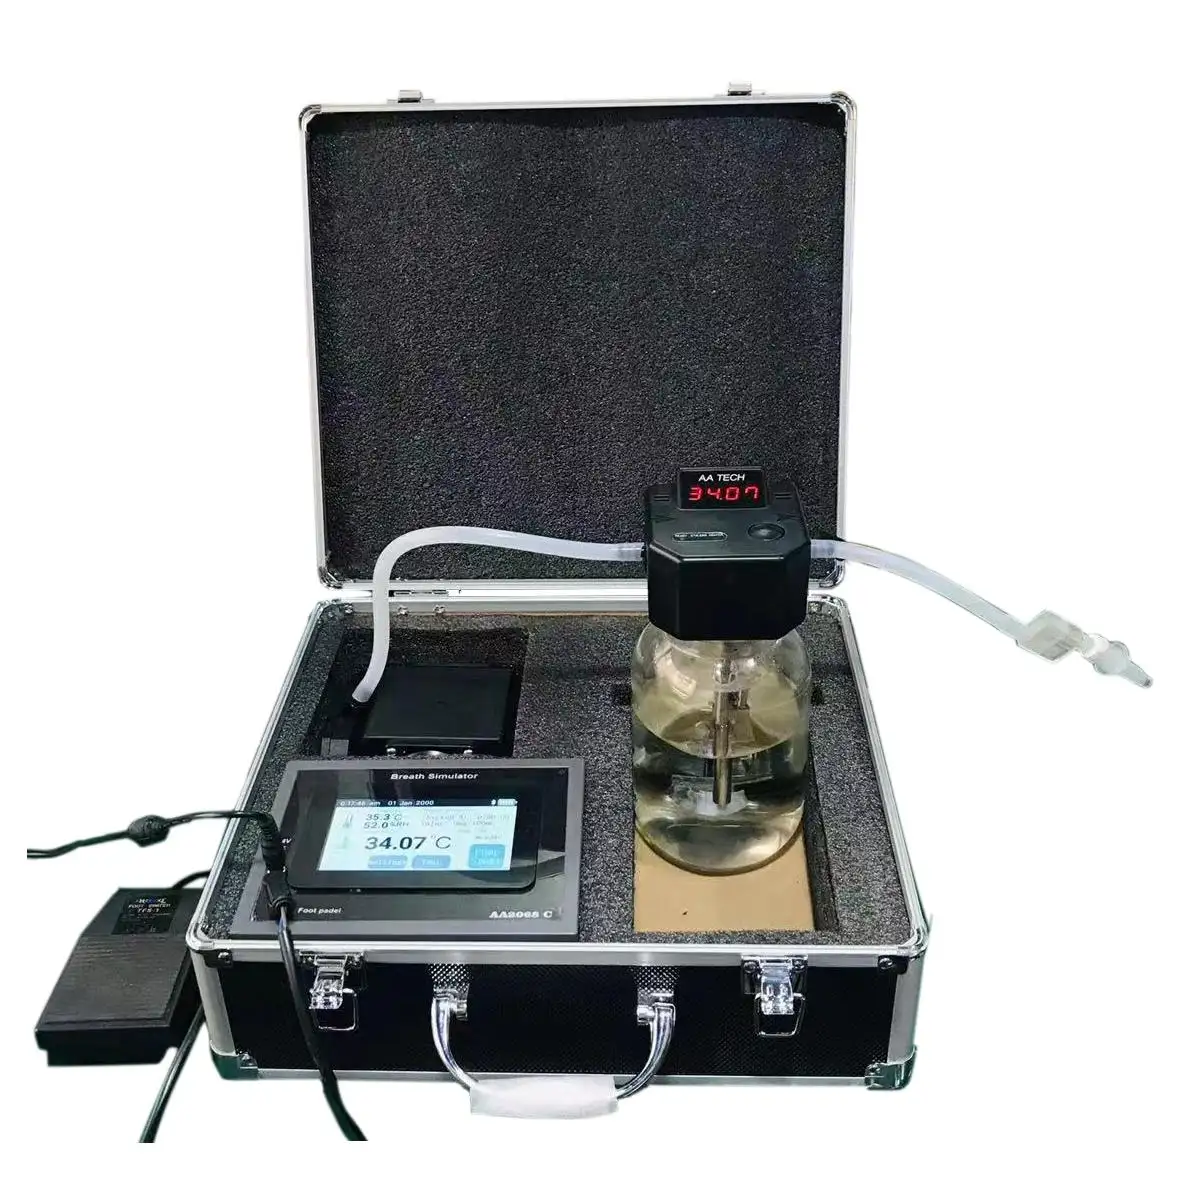 4.3 "용량 성 터치 디스플레이 알코올 호흡 테스트 시뮬레이터 AA2068C. 알코올 테스터 검사기 교정 플랫폼에 적용 가능